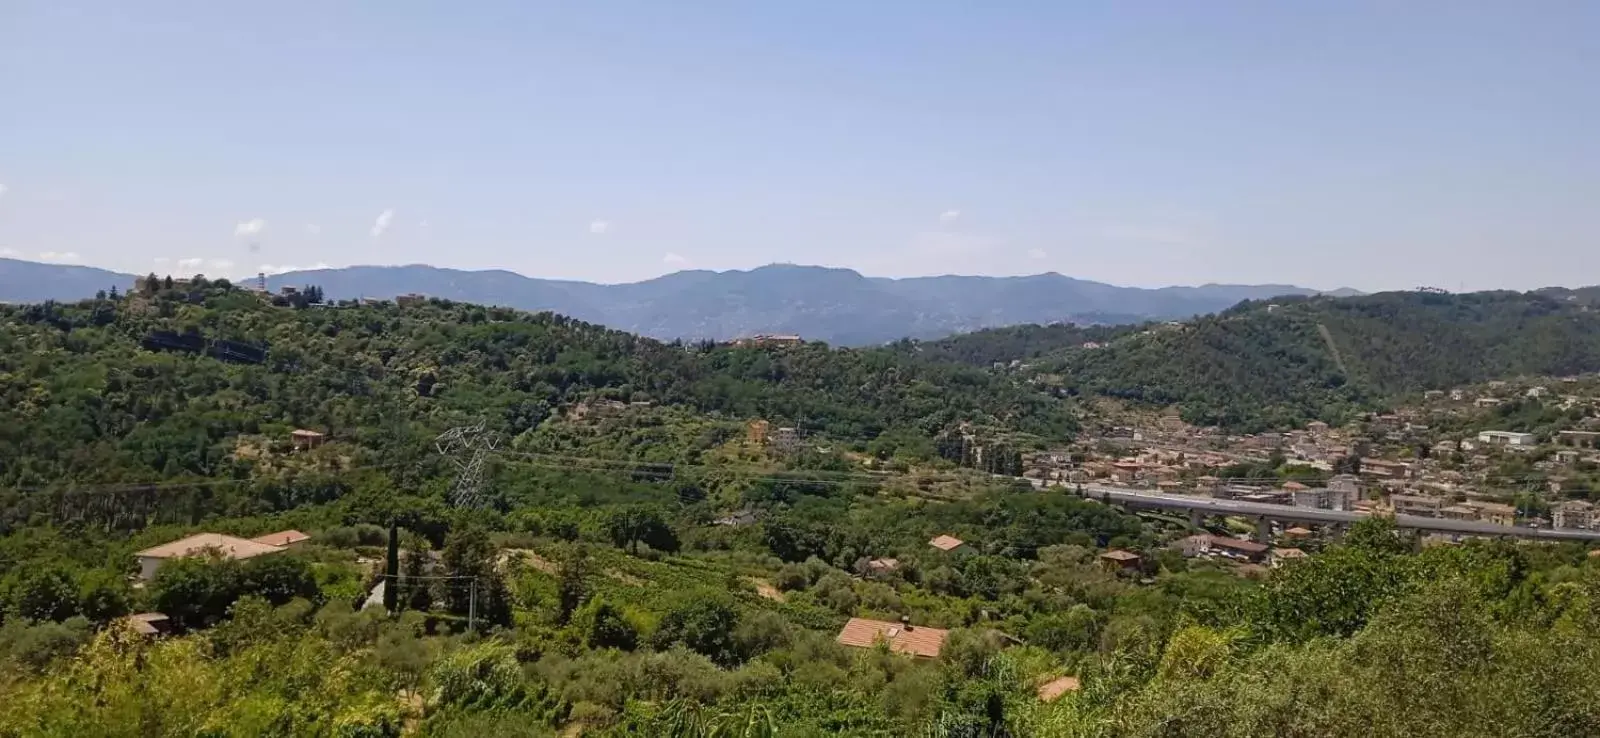 Natural landscape, Bird's-eye View in In Vino Veritas